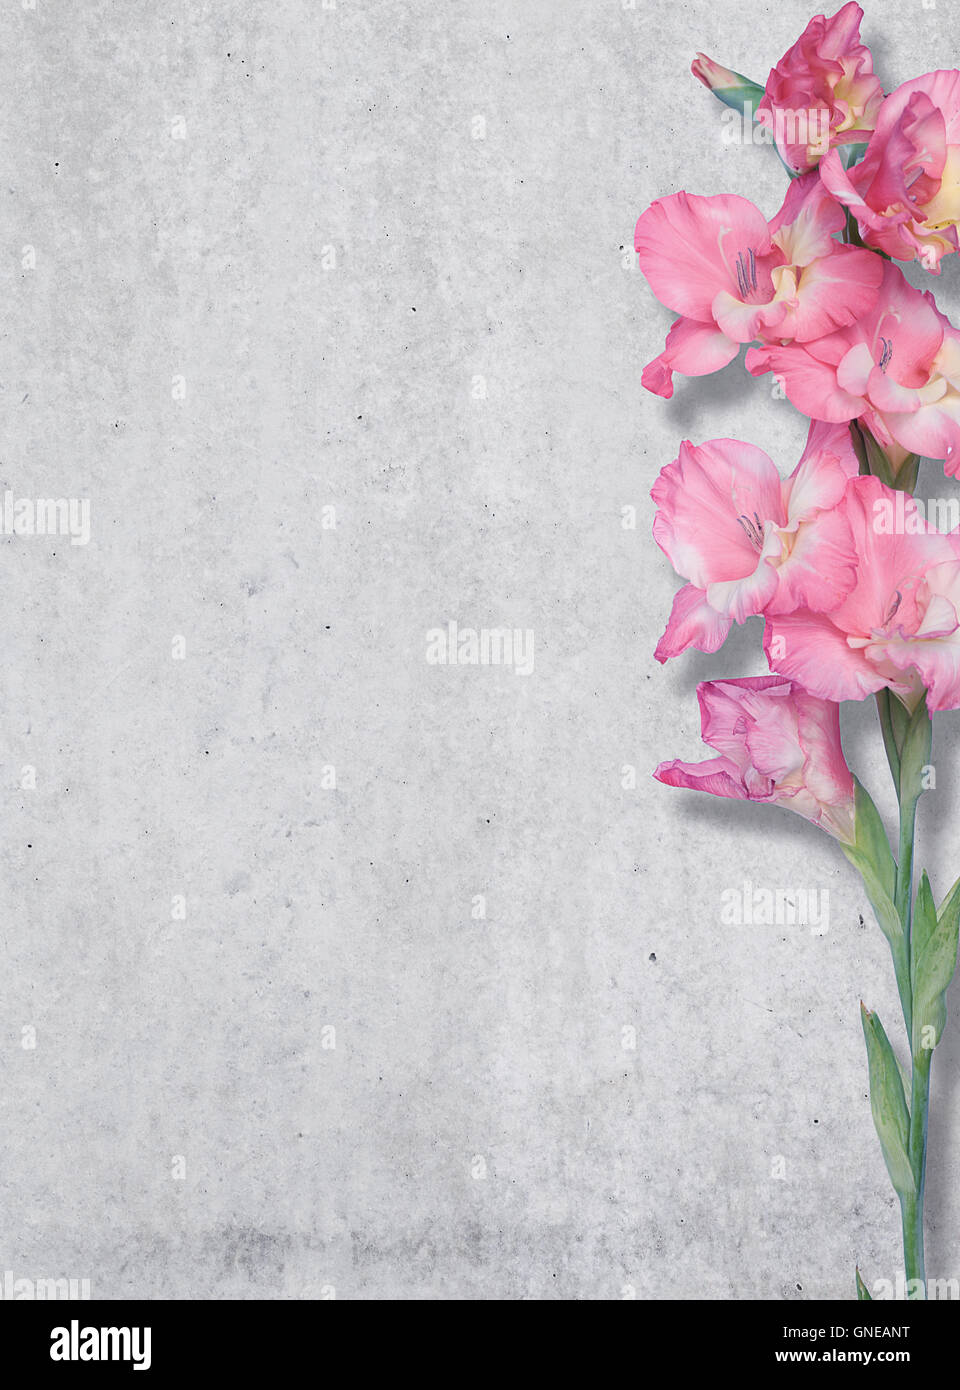 Giglio colore rosa sullo sfondo di una parete in cemento, texture, posto libero. Foto Stock